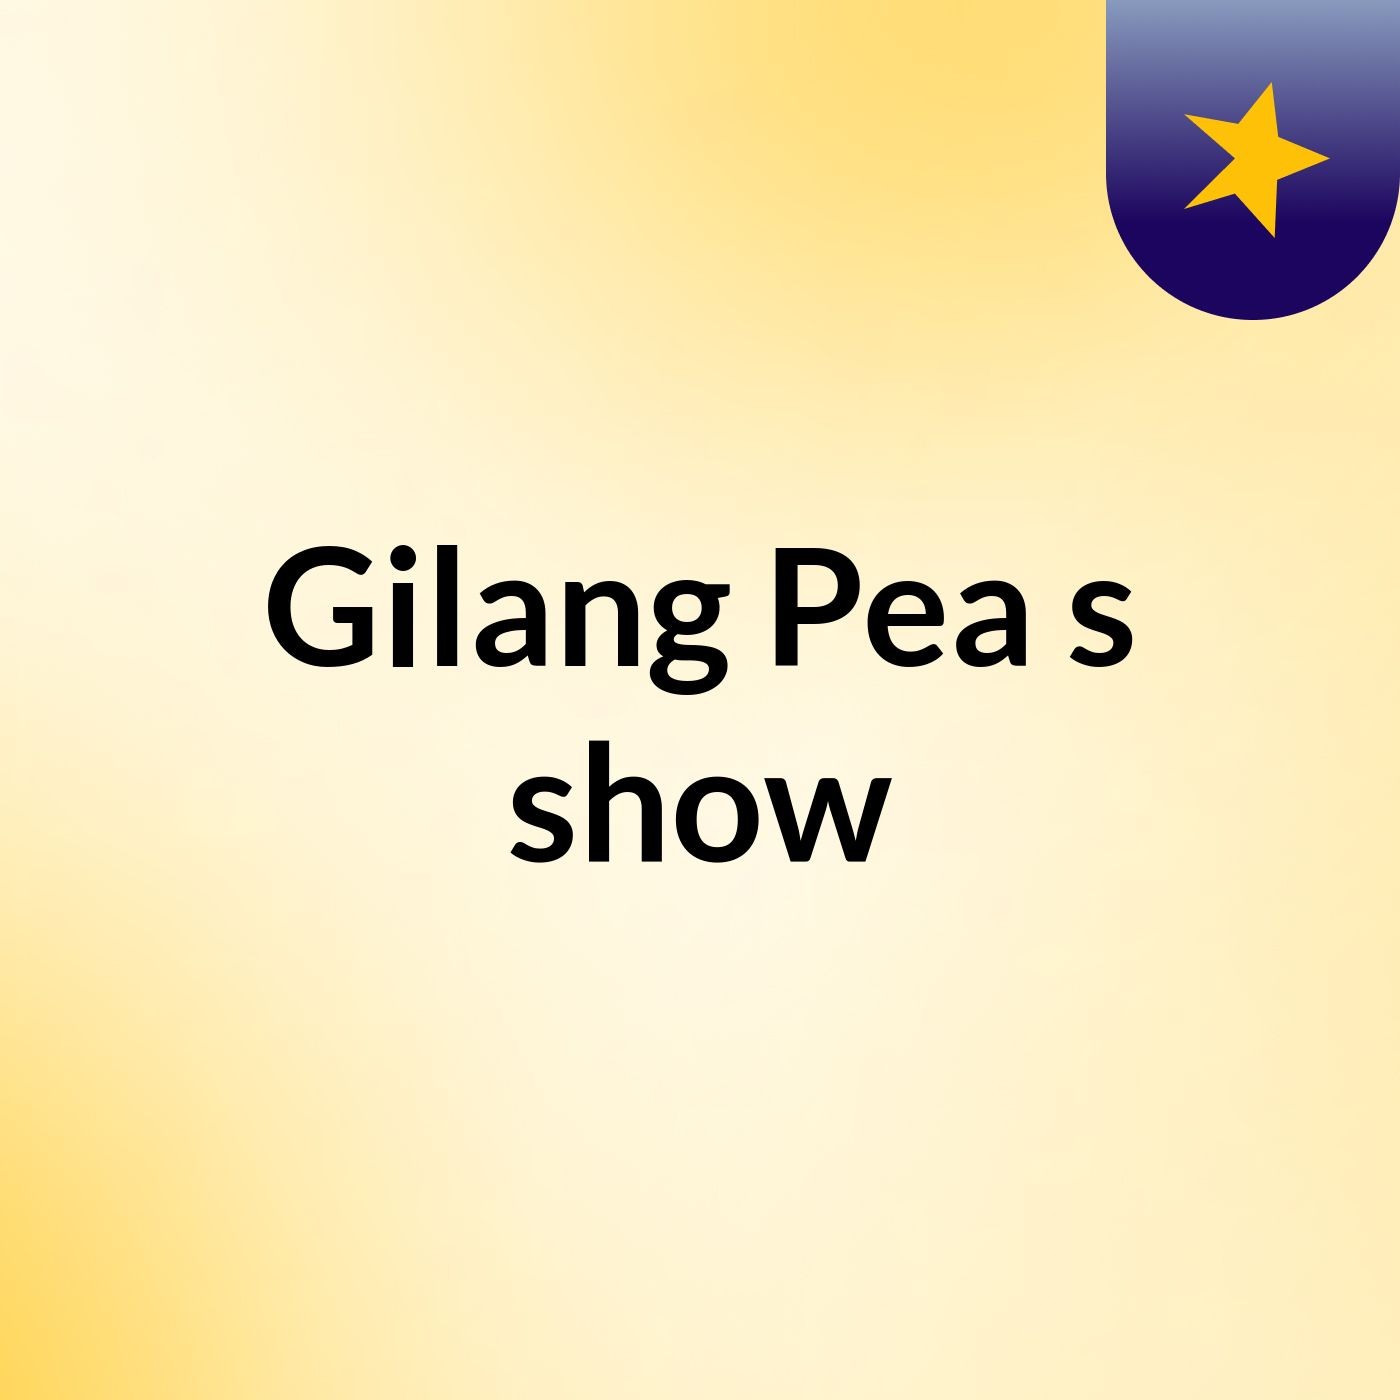 Gilang Pea's show